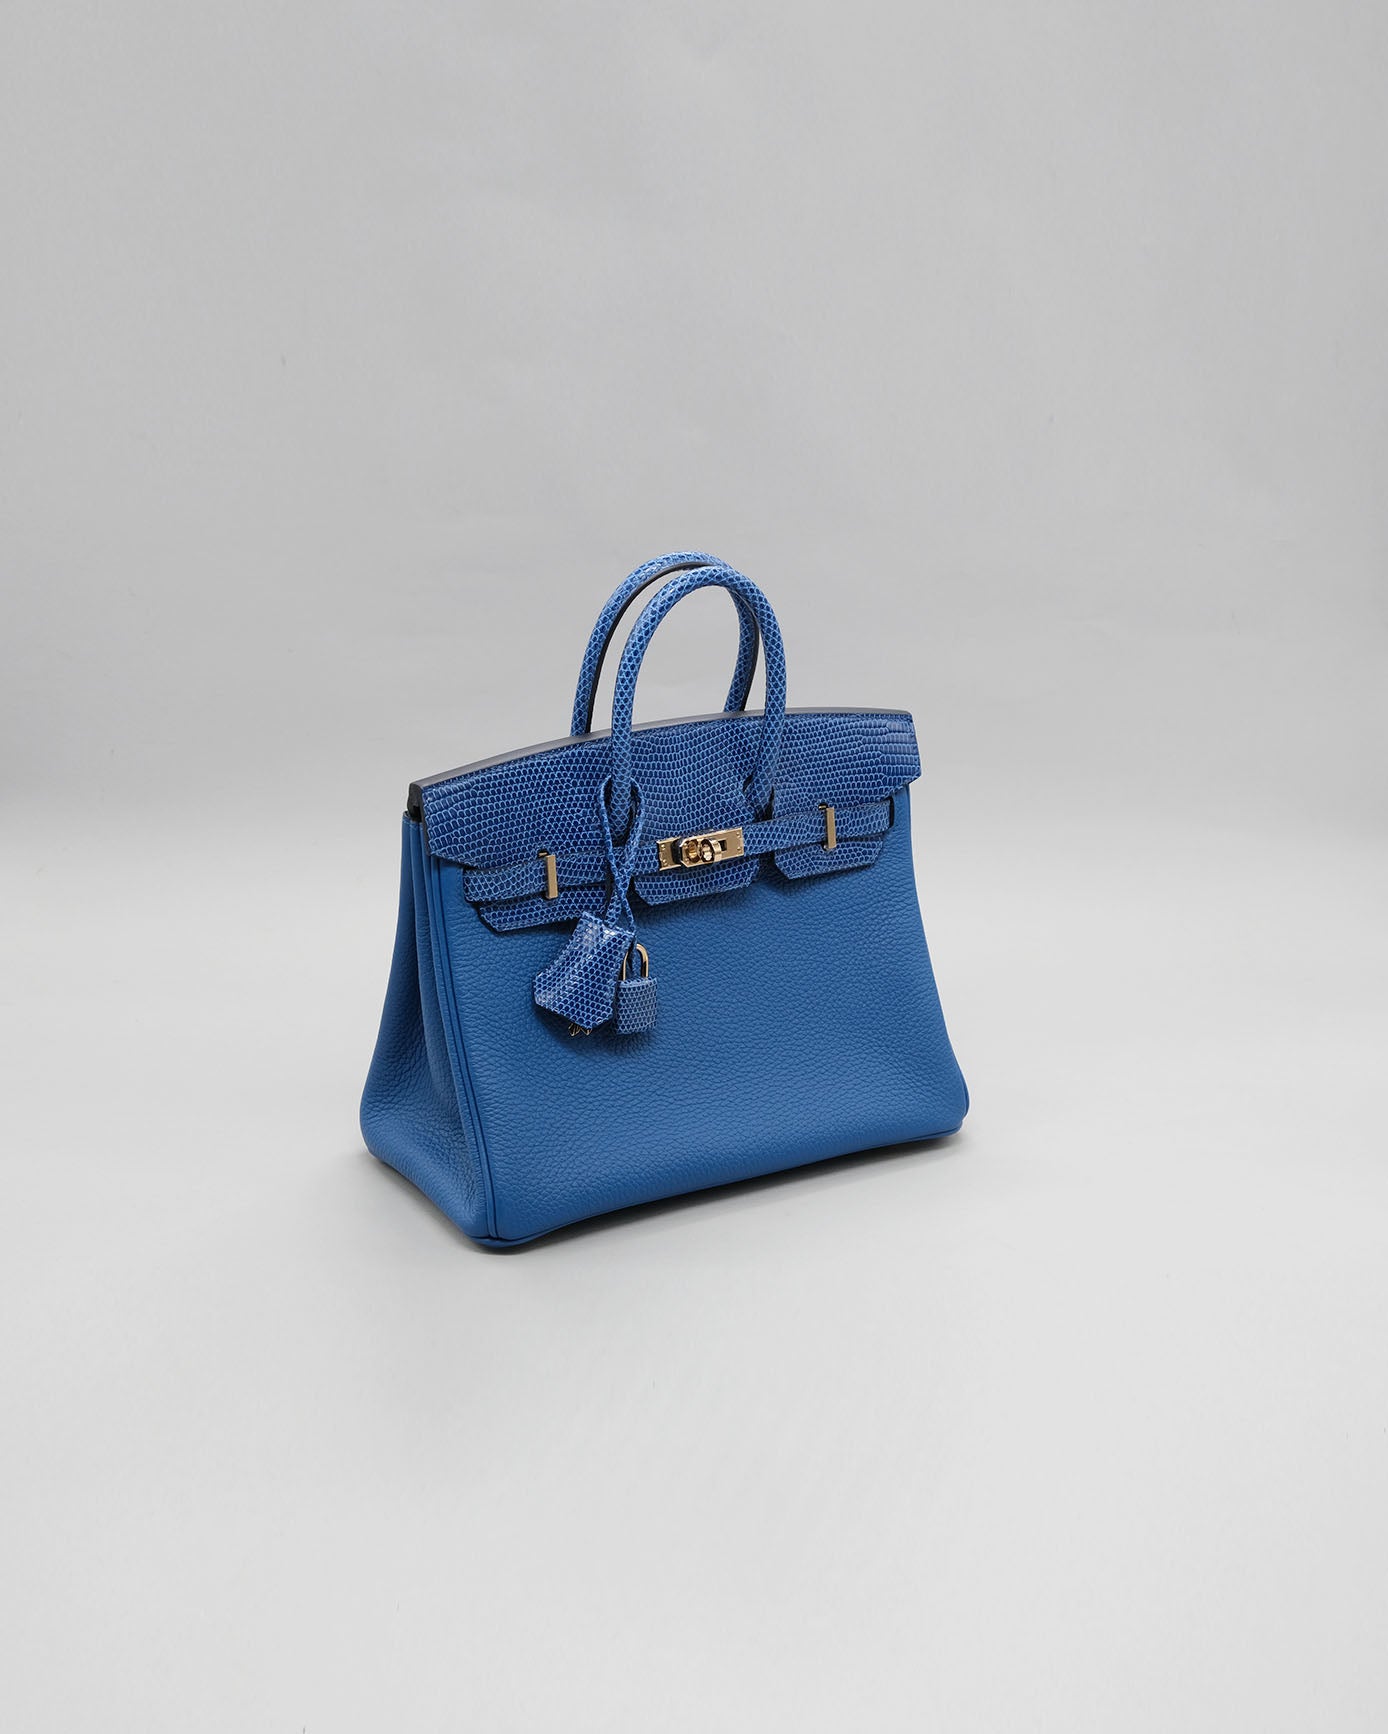 Hermes Birkin 25 Touch Bleu France Togo/Lizard Handbag